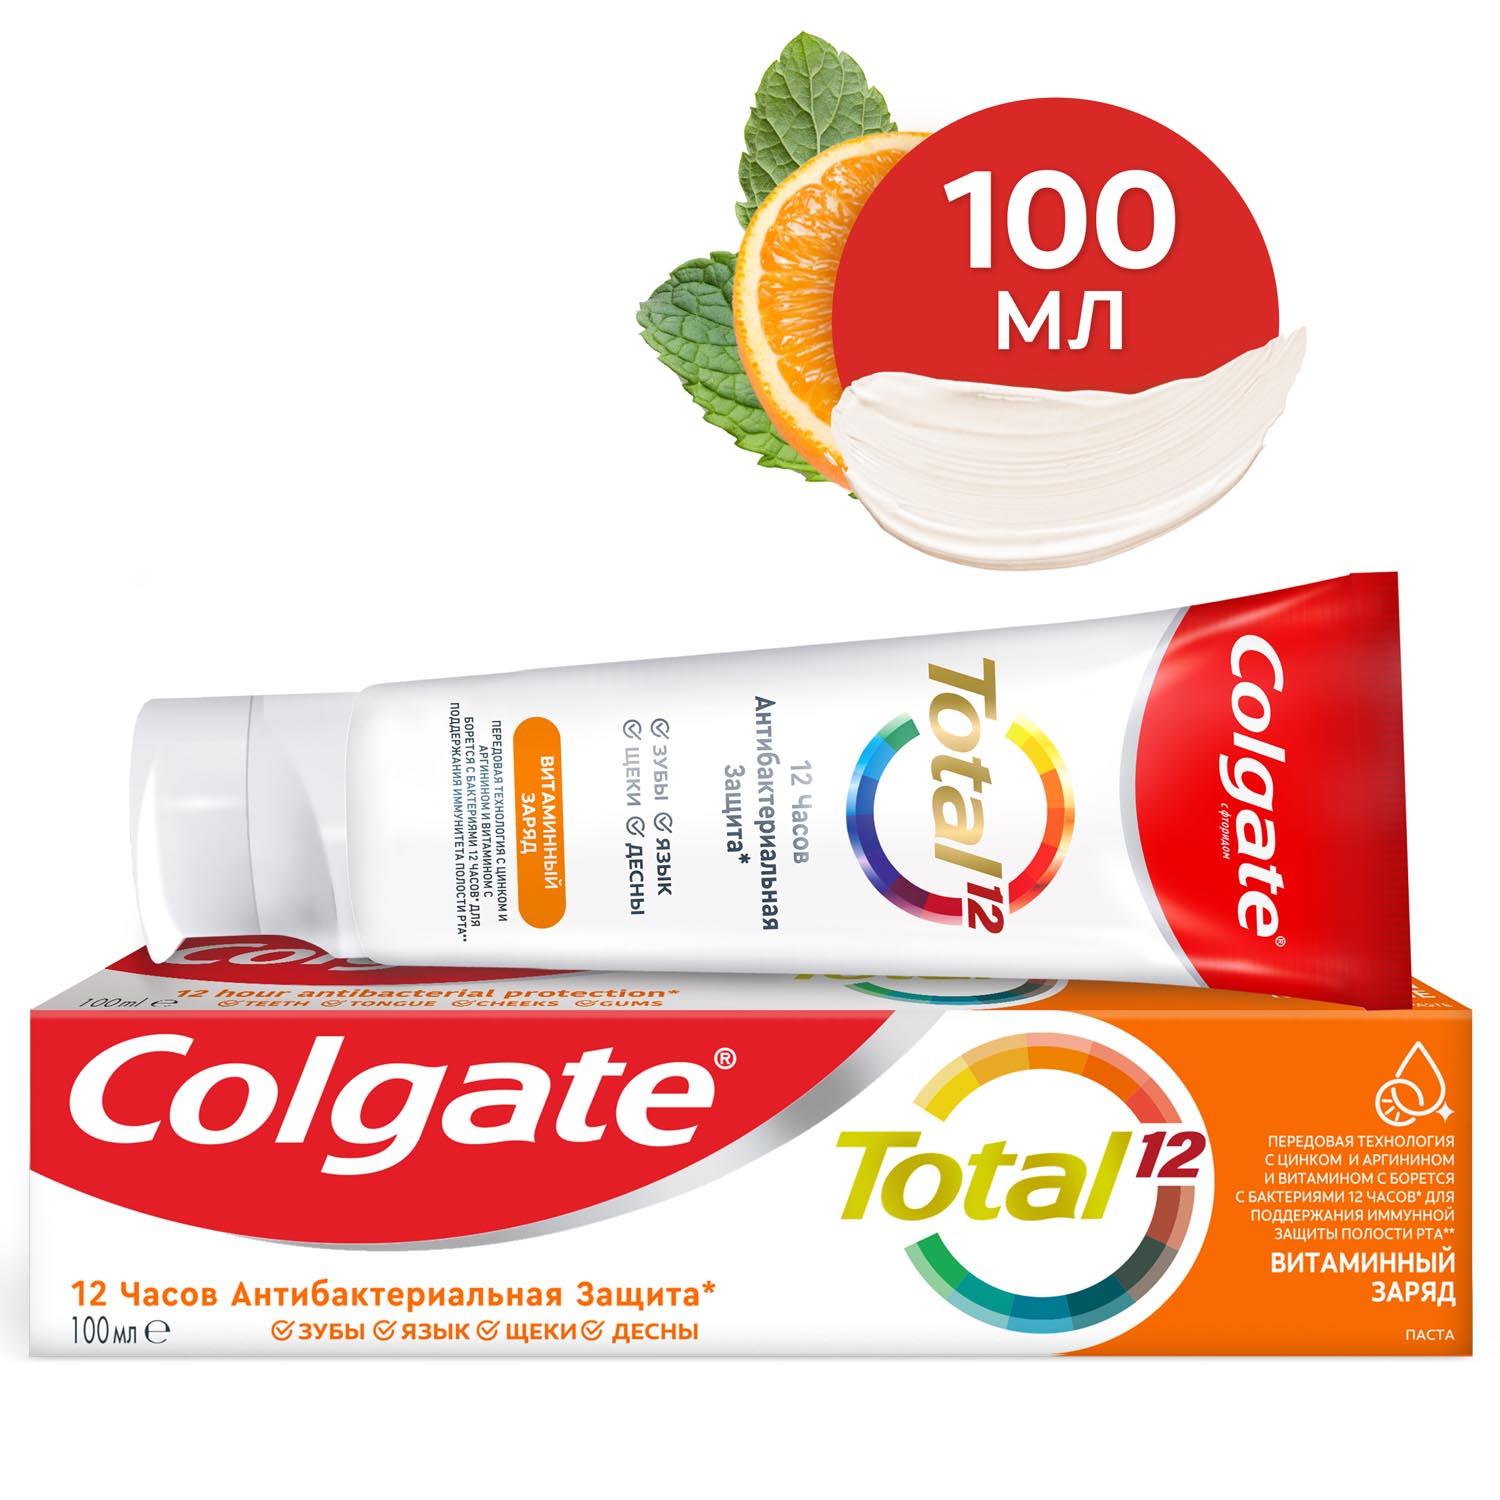 Зубная паста Colgate Total 12 Витаминный заряд с цинком и аргинином для комплексной антибактериальной защиты всей полости рта в течение 12 часов, 100 мл шампунь для всей семьи 1000 мл